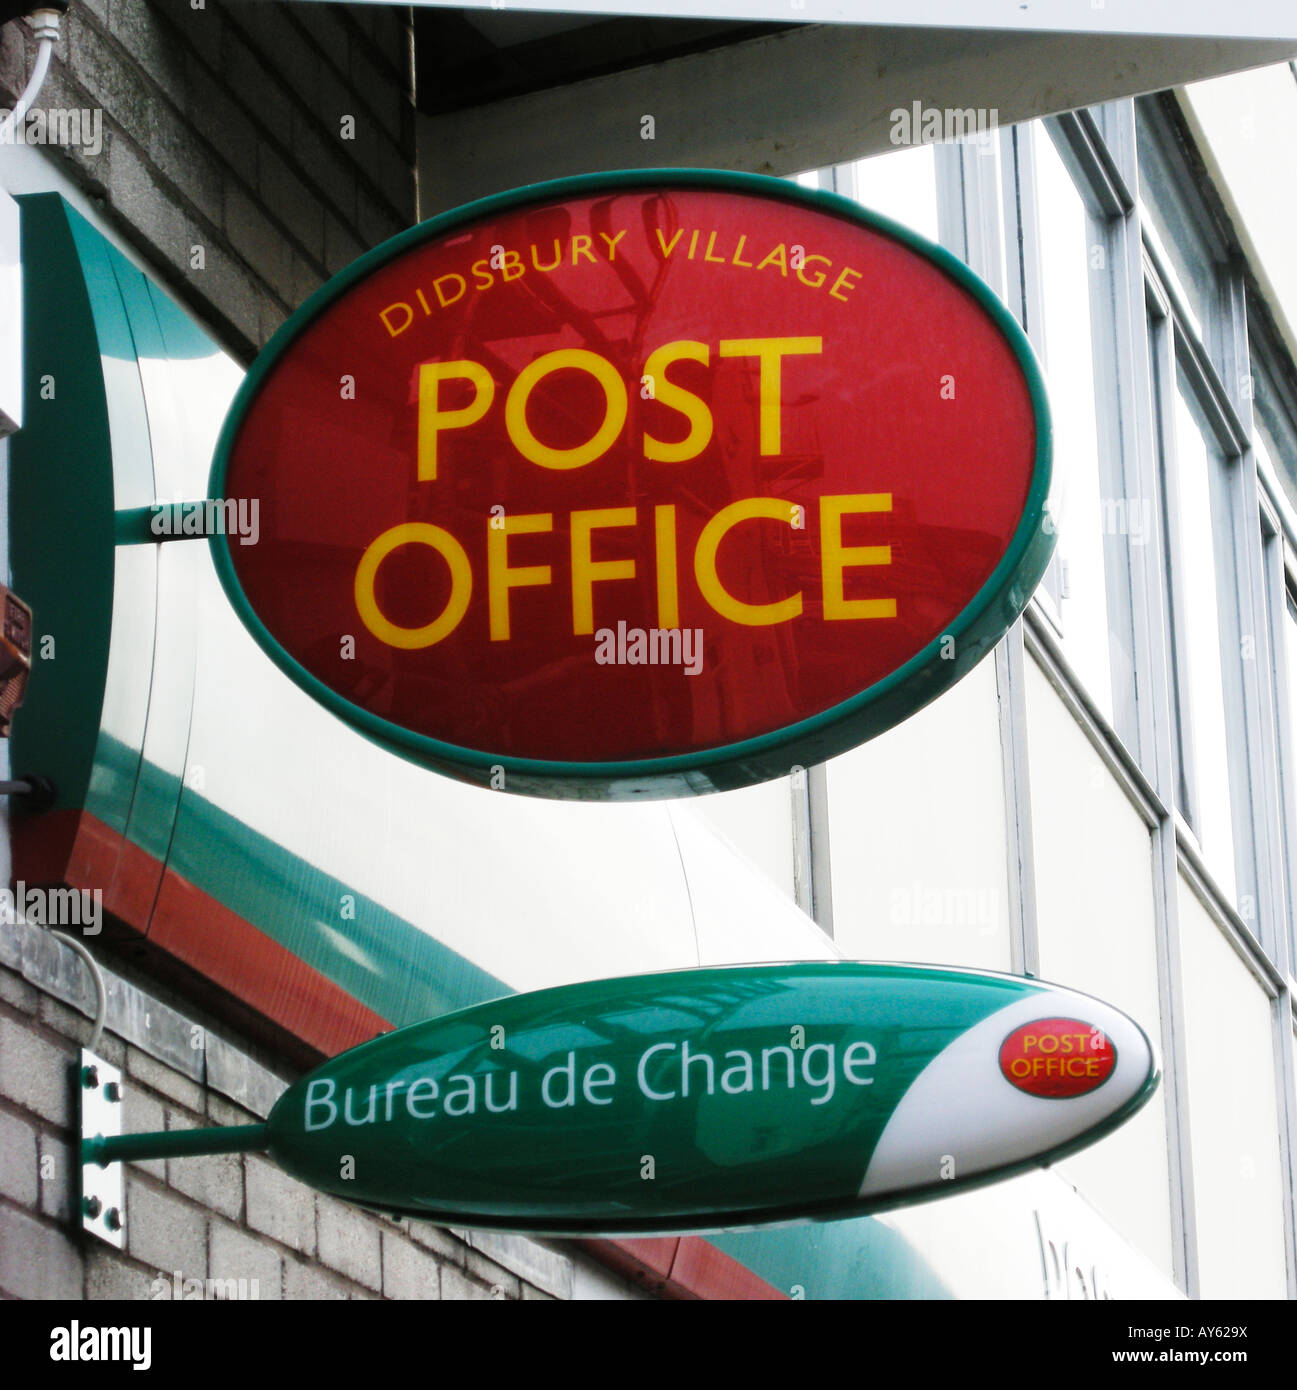 village post office Stock Photo